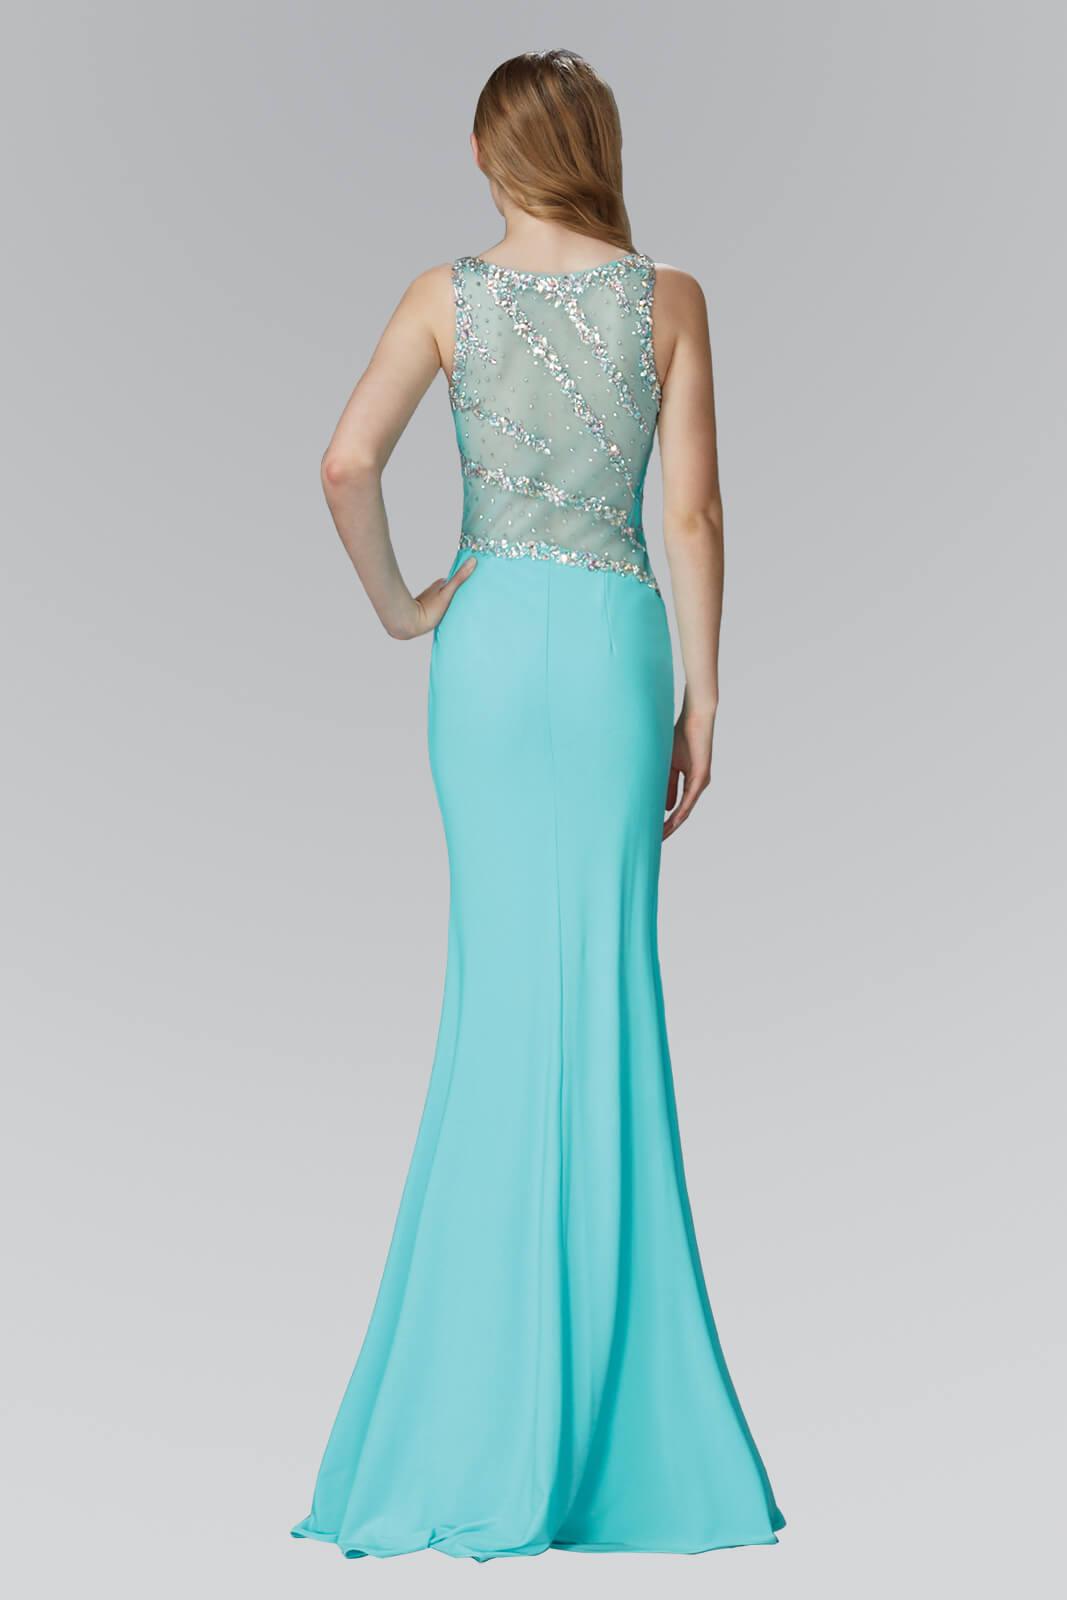 Prom Long Sleeveless Formal Dress with Side Slit - The Dress Outlet Elizabeth K